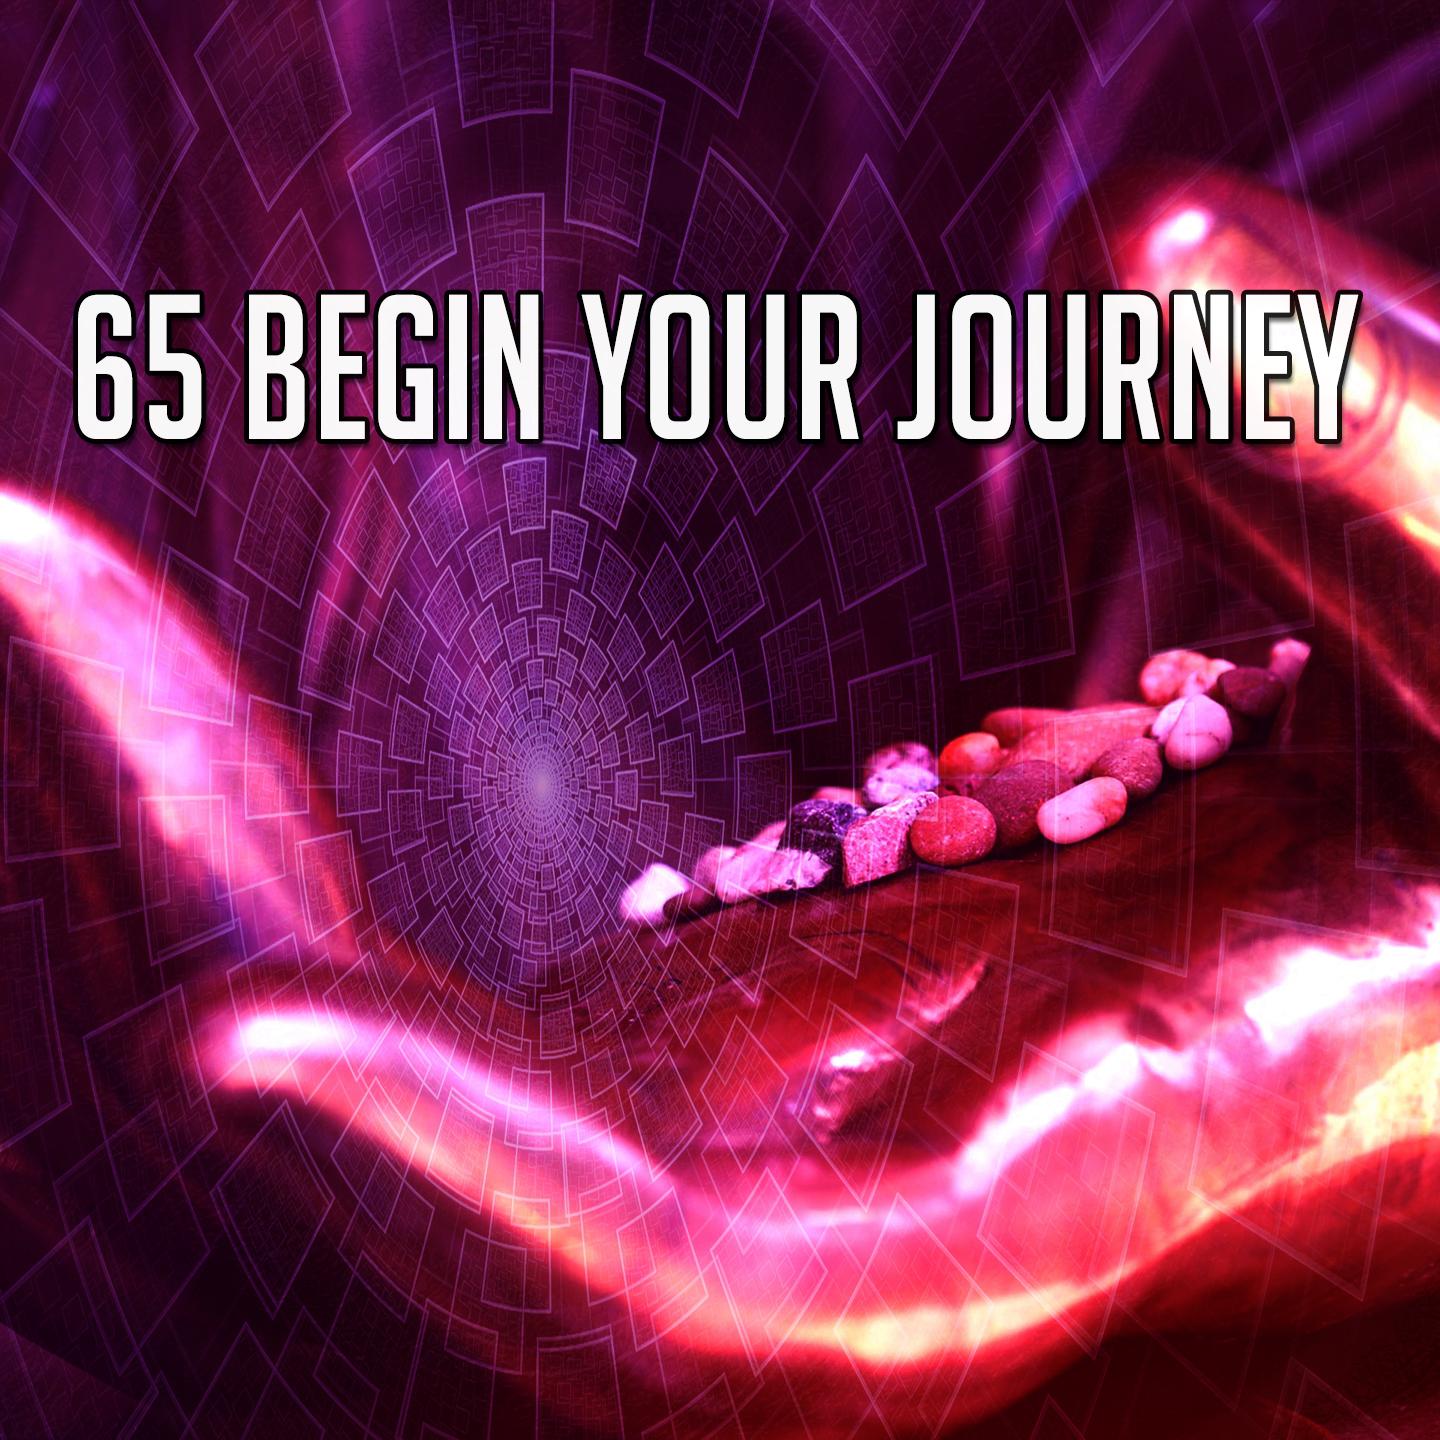 65 Begin Your Journey